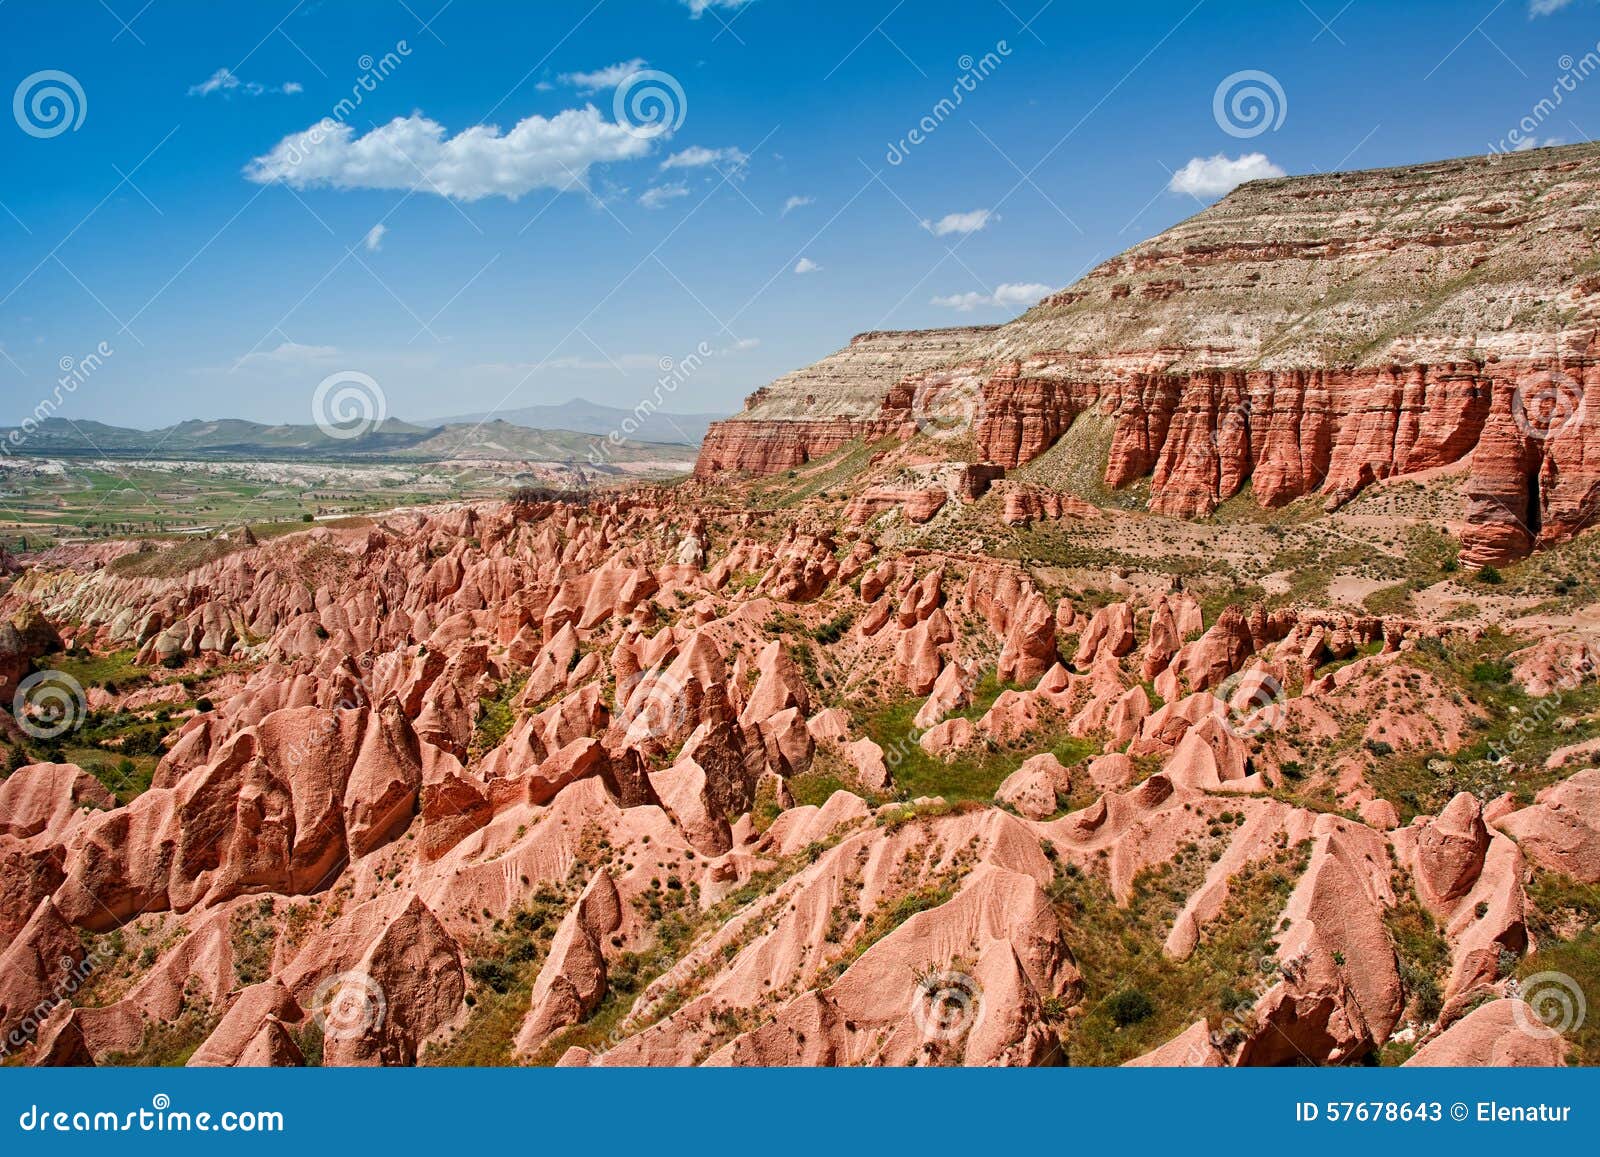 red valley at cappadocia, anatolia, turkey.